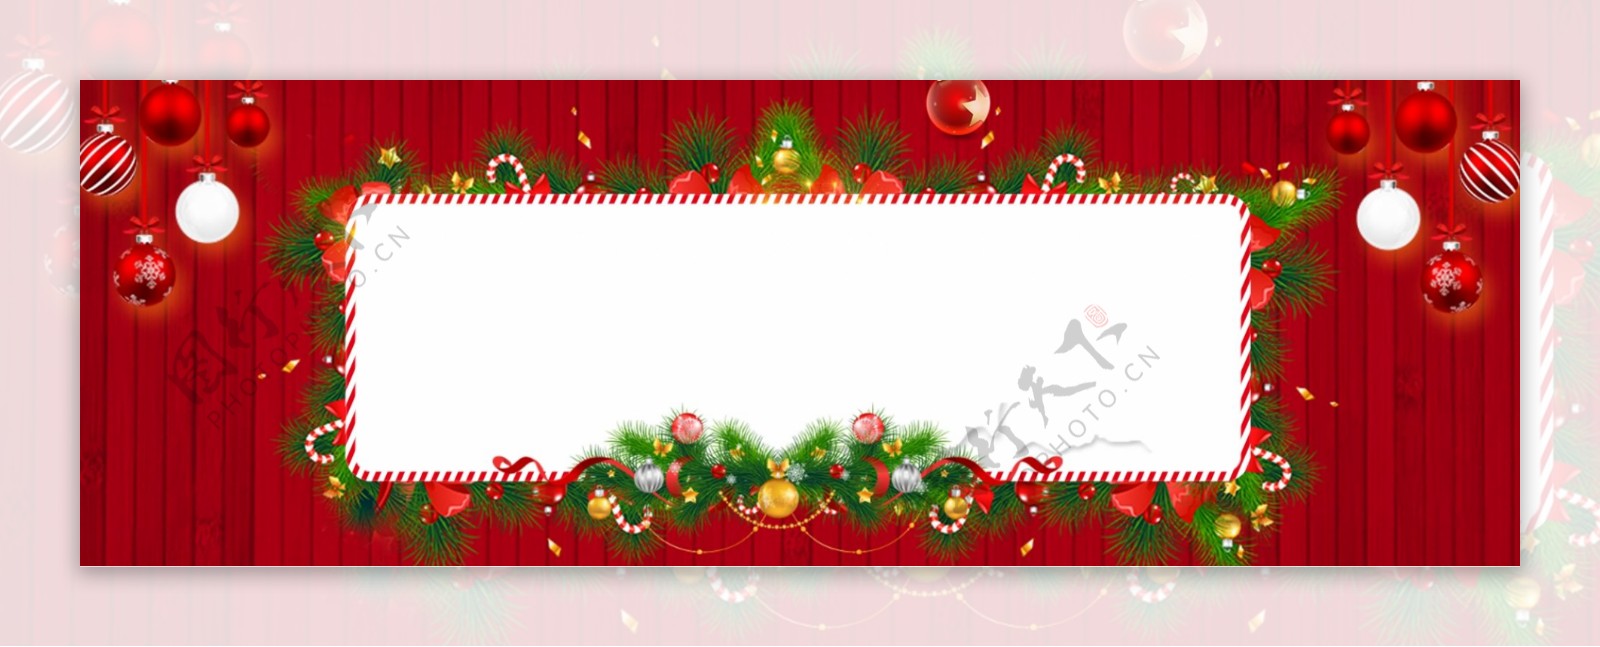 西方节日圣诞节促销卡通banner背景